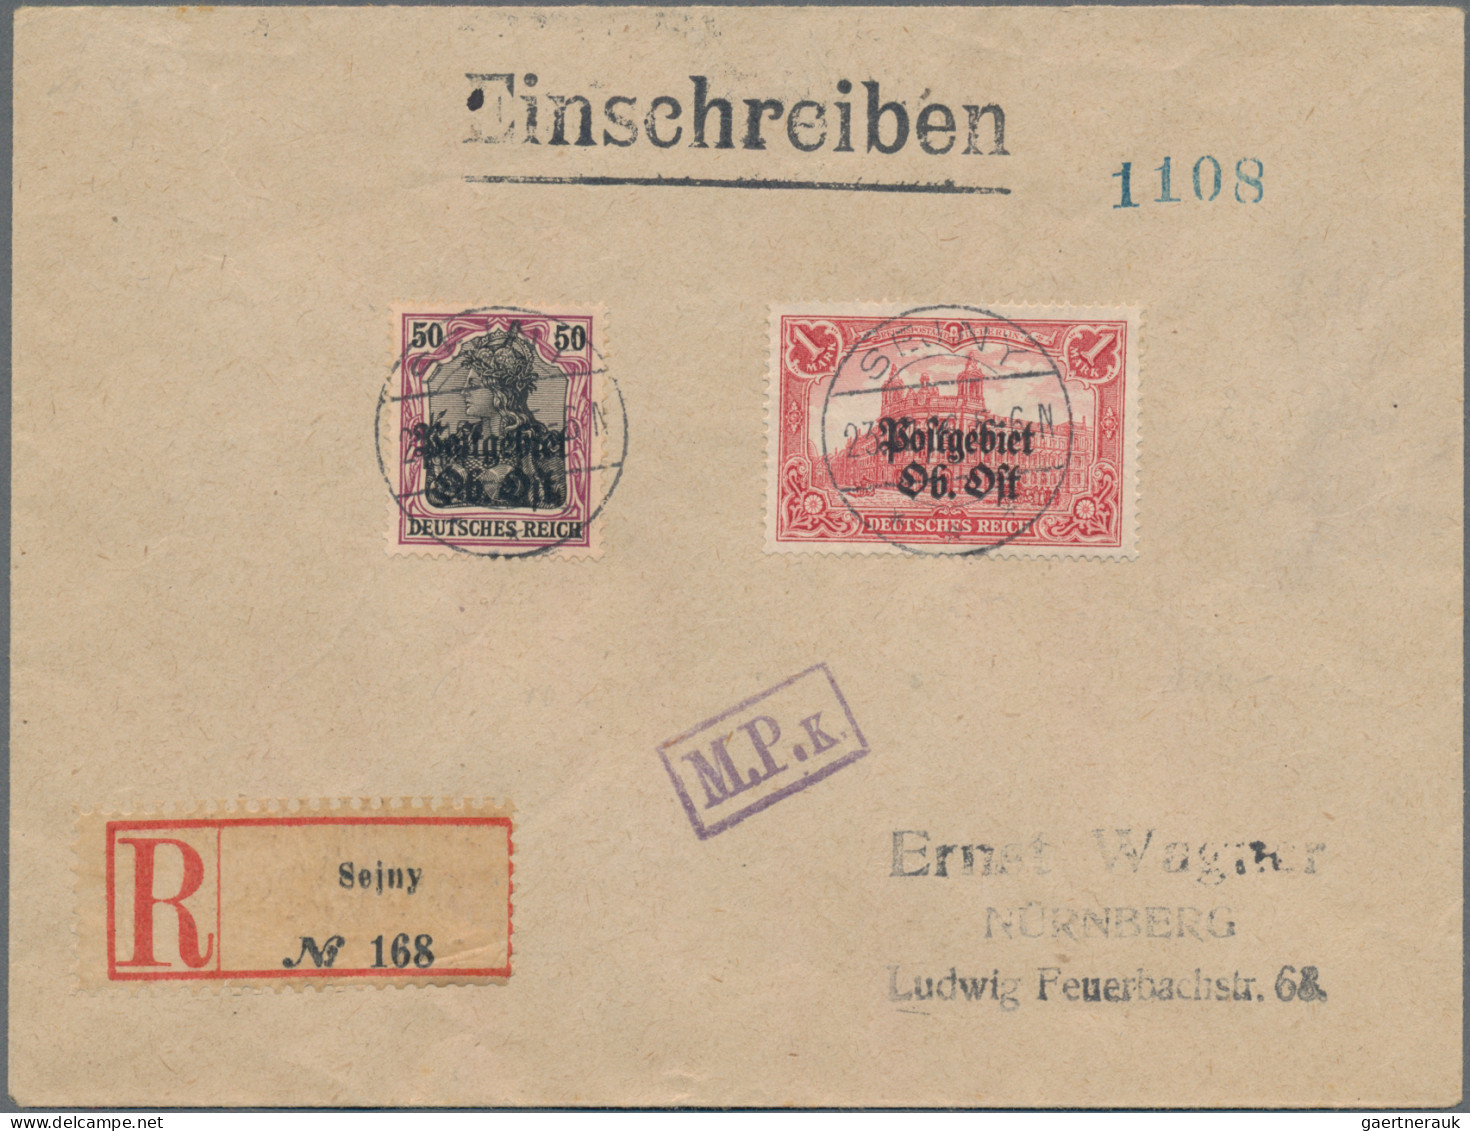 Deutsche Besetzung I. WK: Postgebiet Ober. Ost: 1916 1 M. Mit 26:17 Zähnungslöch - Besetzungen 1914-18